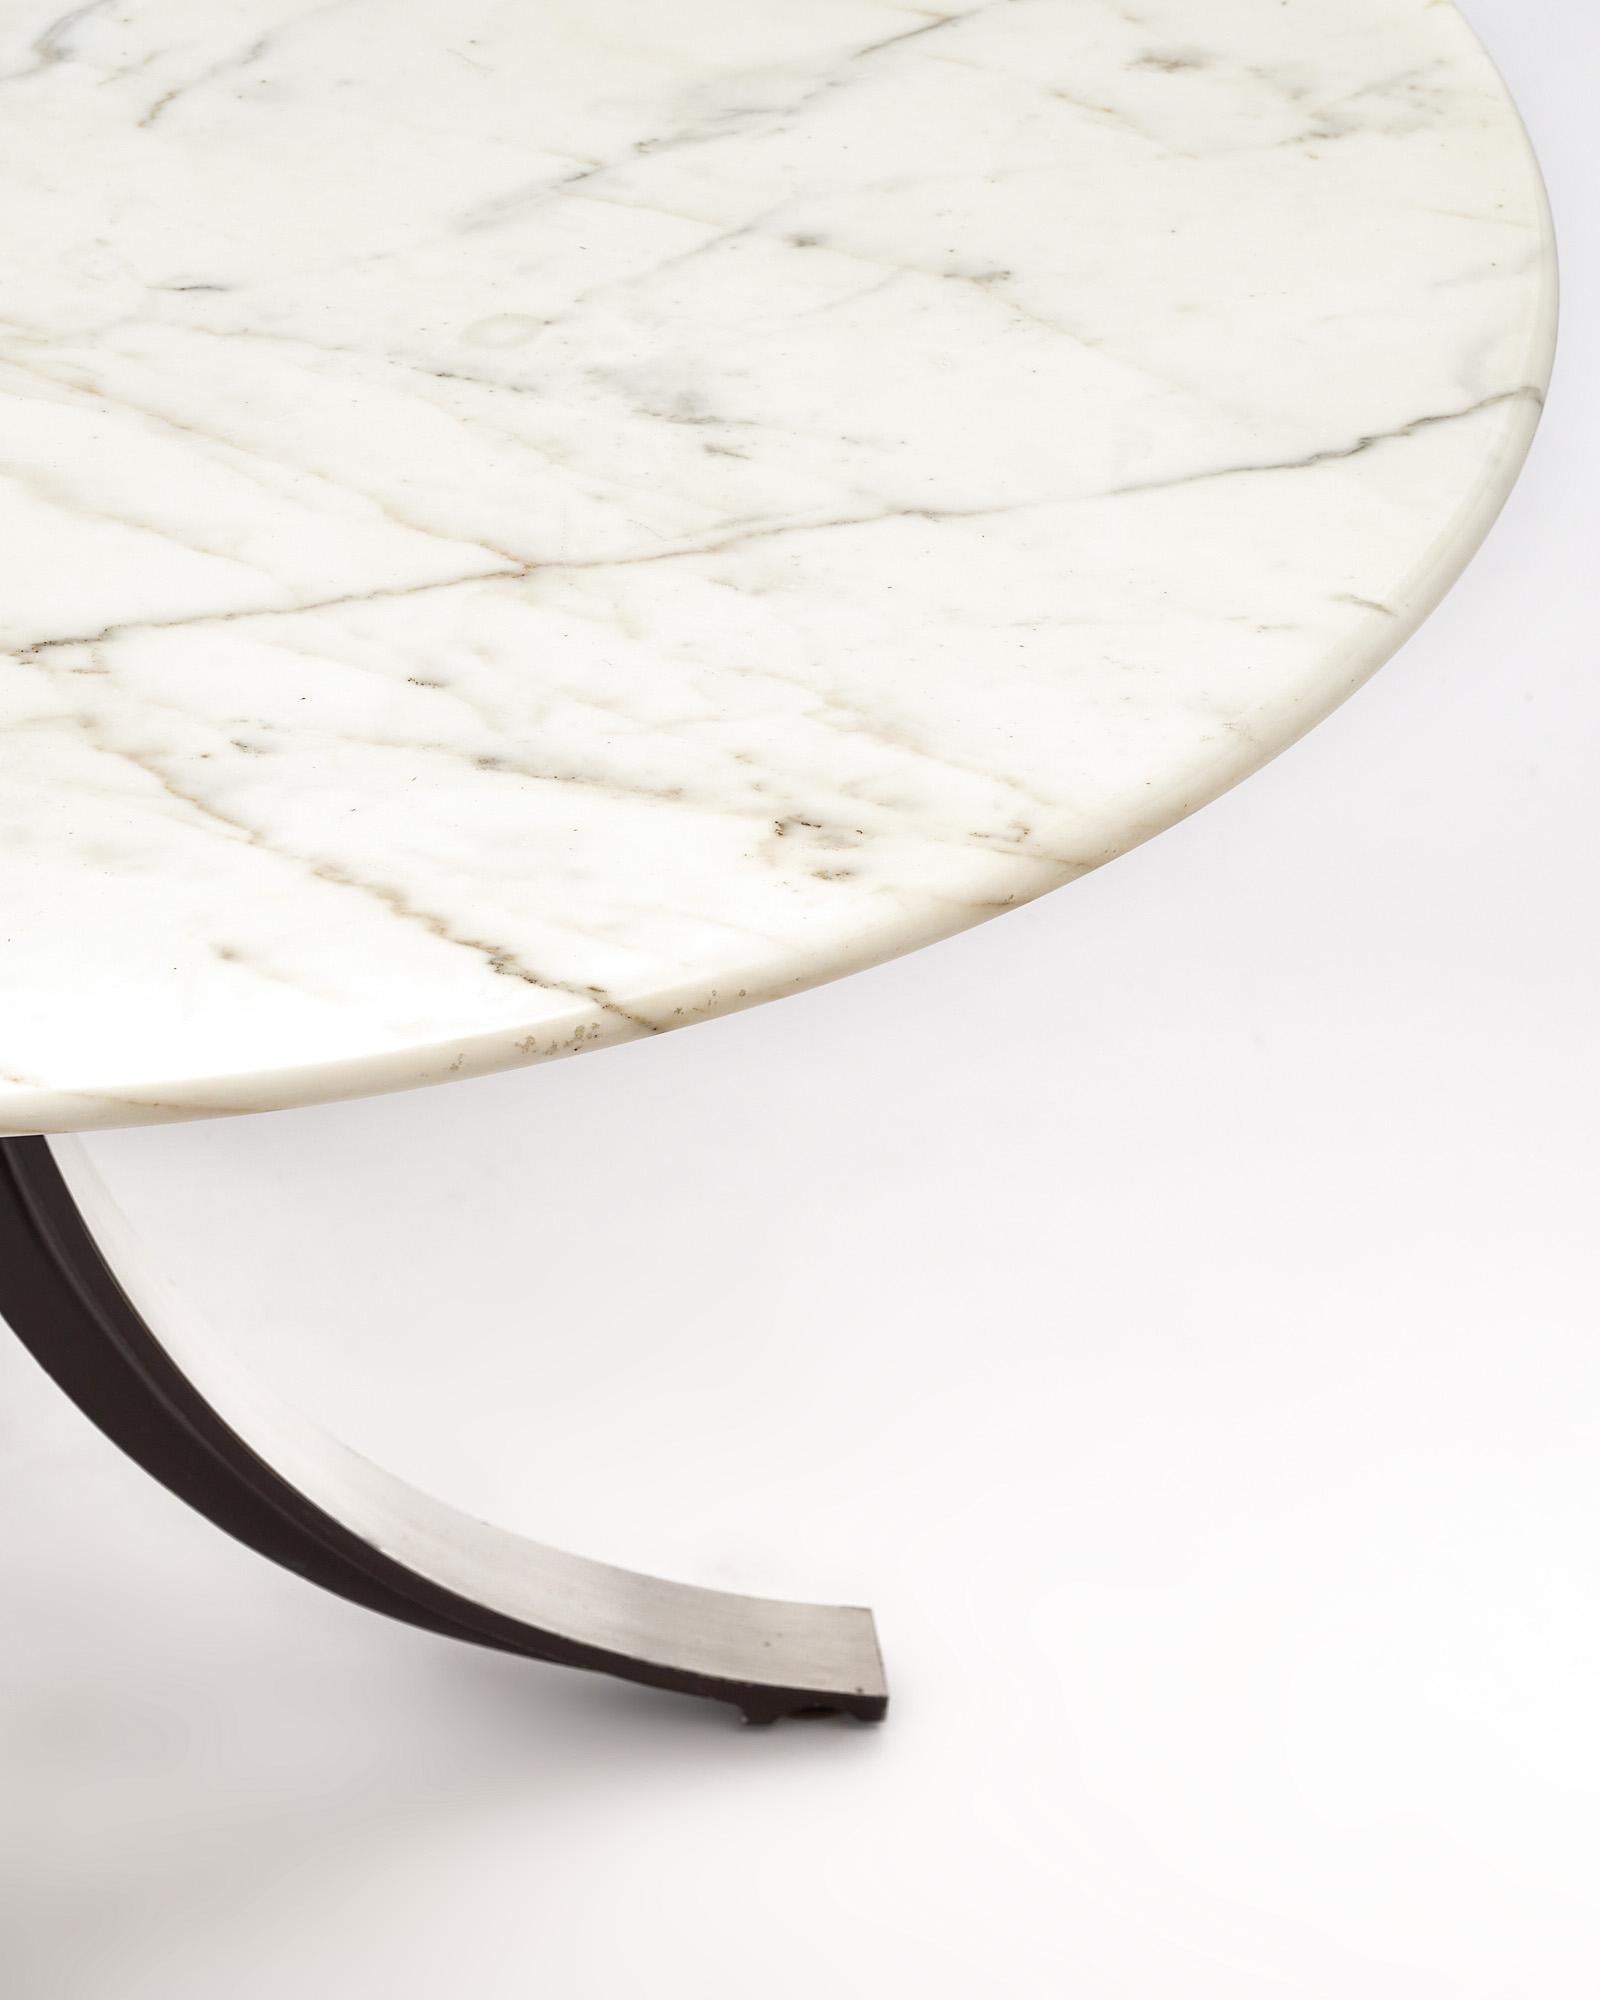 Italian Marble Topped Osvaldo Borsani Dining Table For Sale